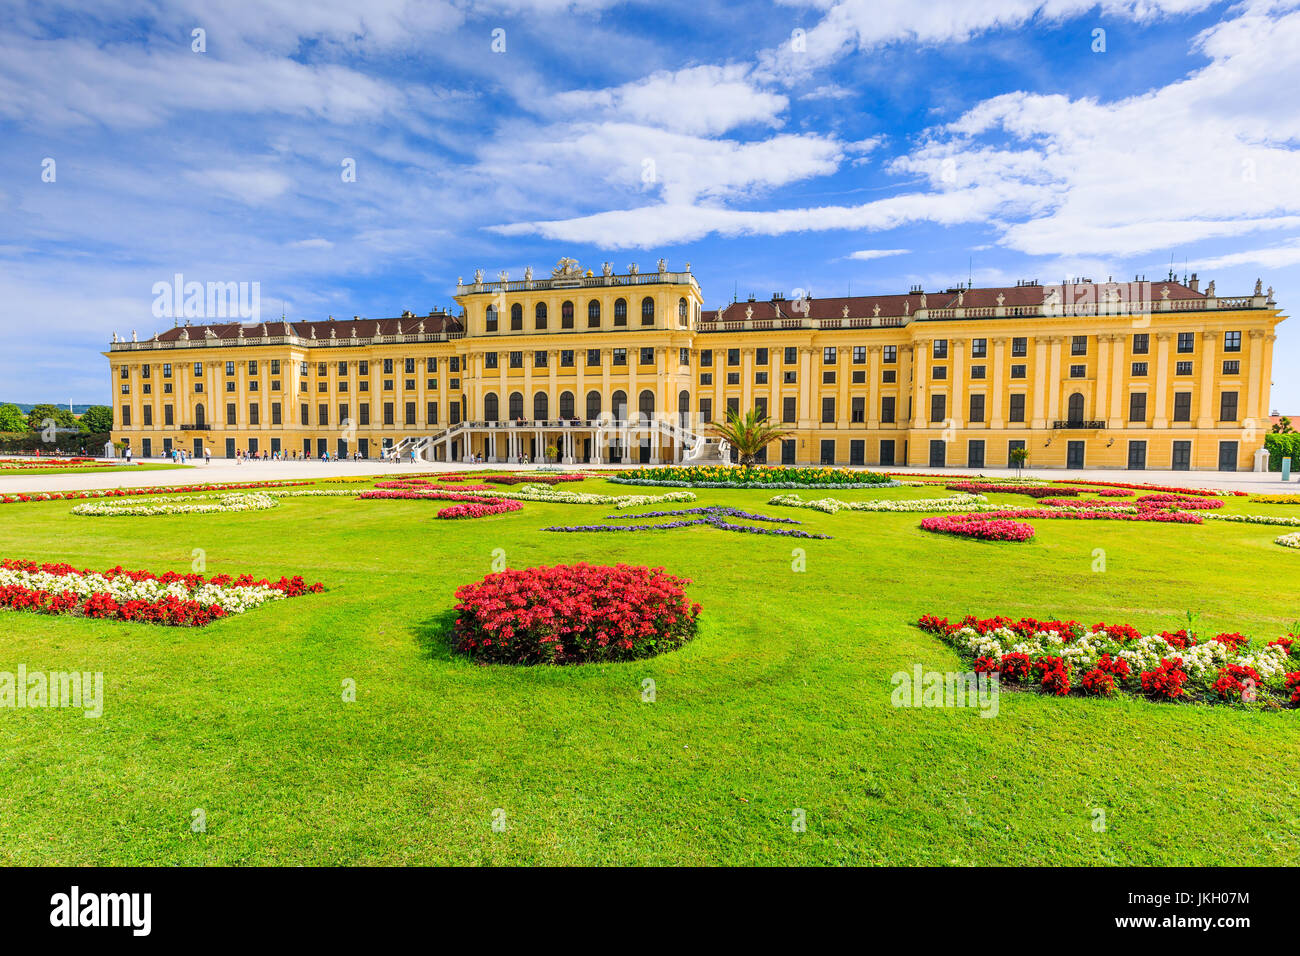 Wien, Österreich - 28. Juni 2017: Schloss Schönbrunn mit Gärten. Die ehemalige kaiserliche Sommerresidenz ist ein UNESCO-Weltkulturerbe. Stockfoto